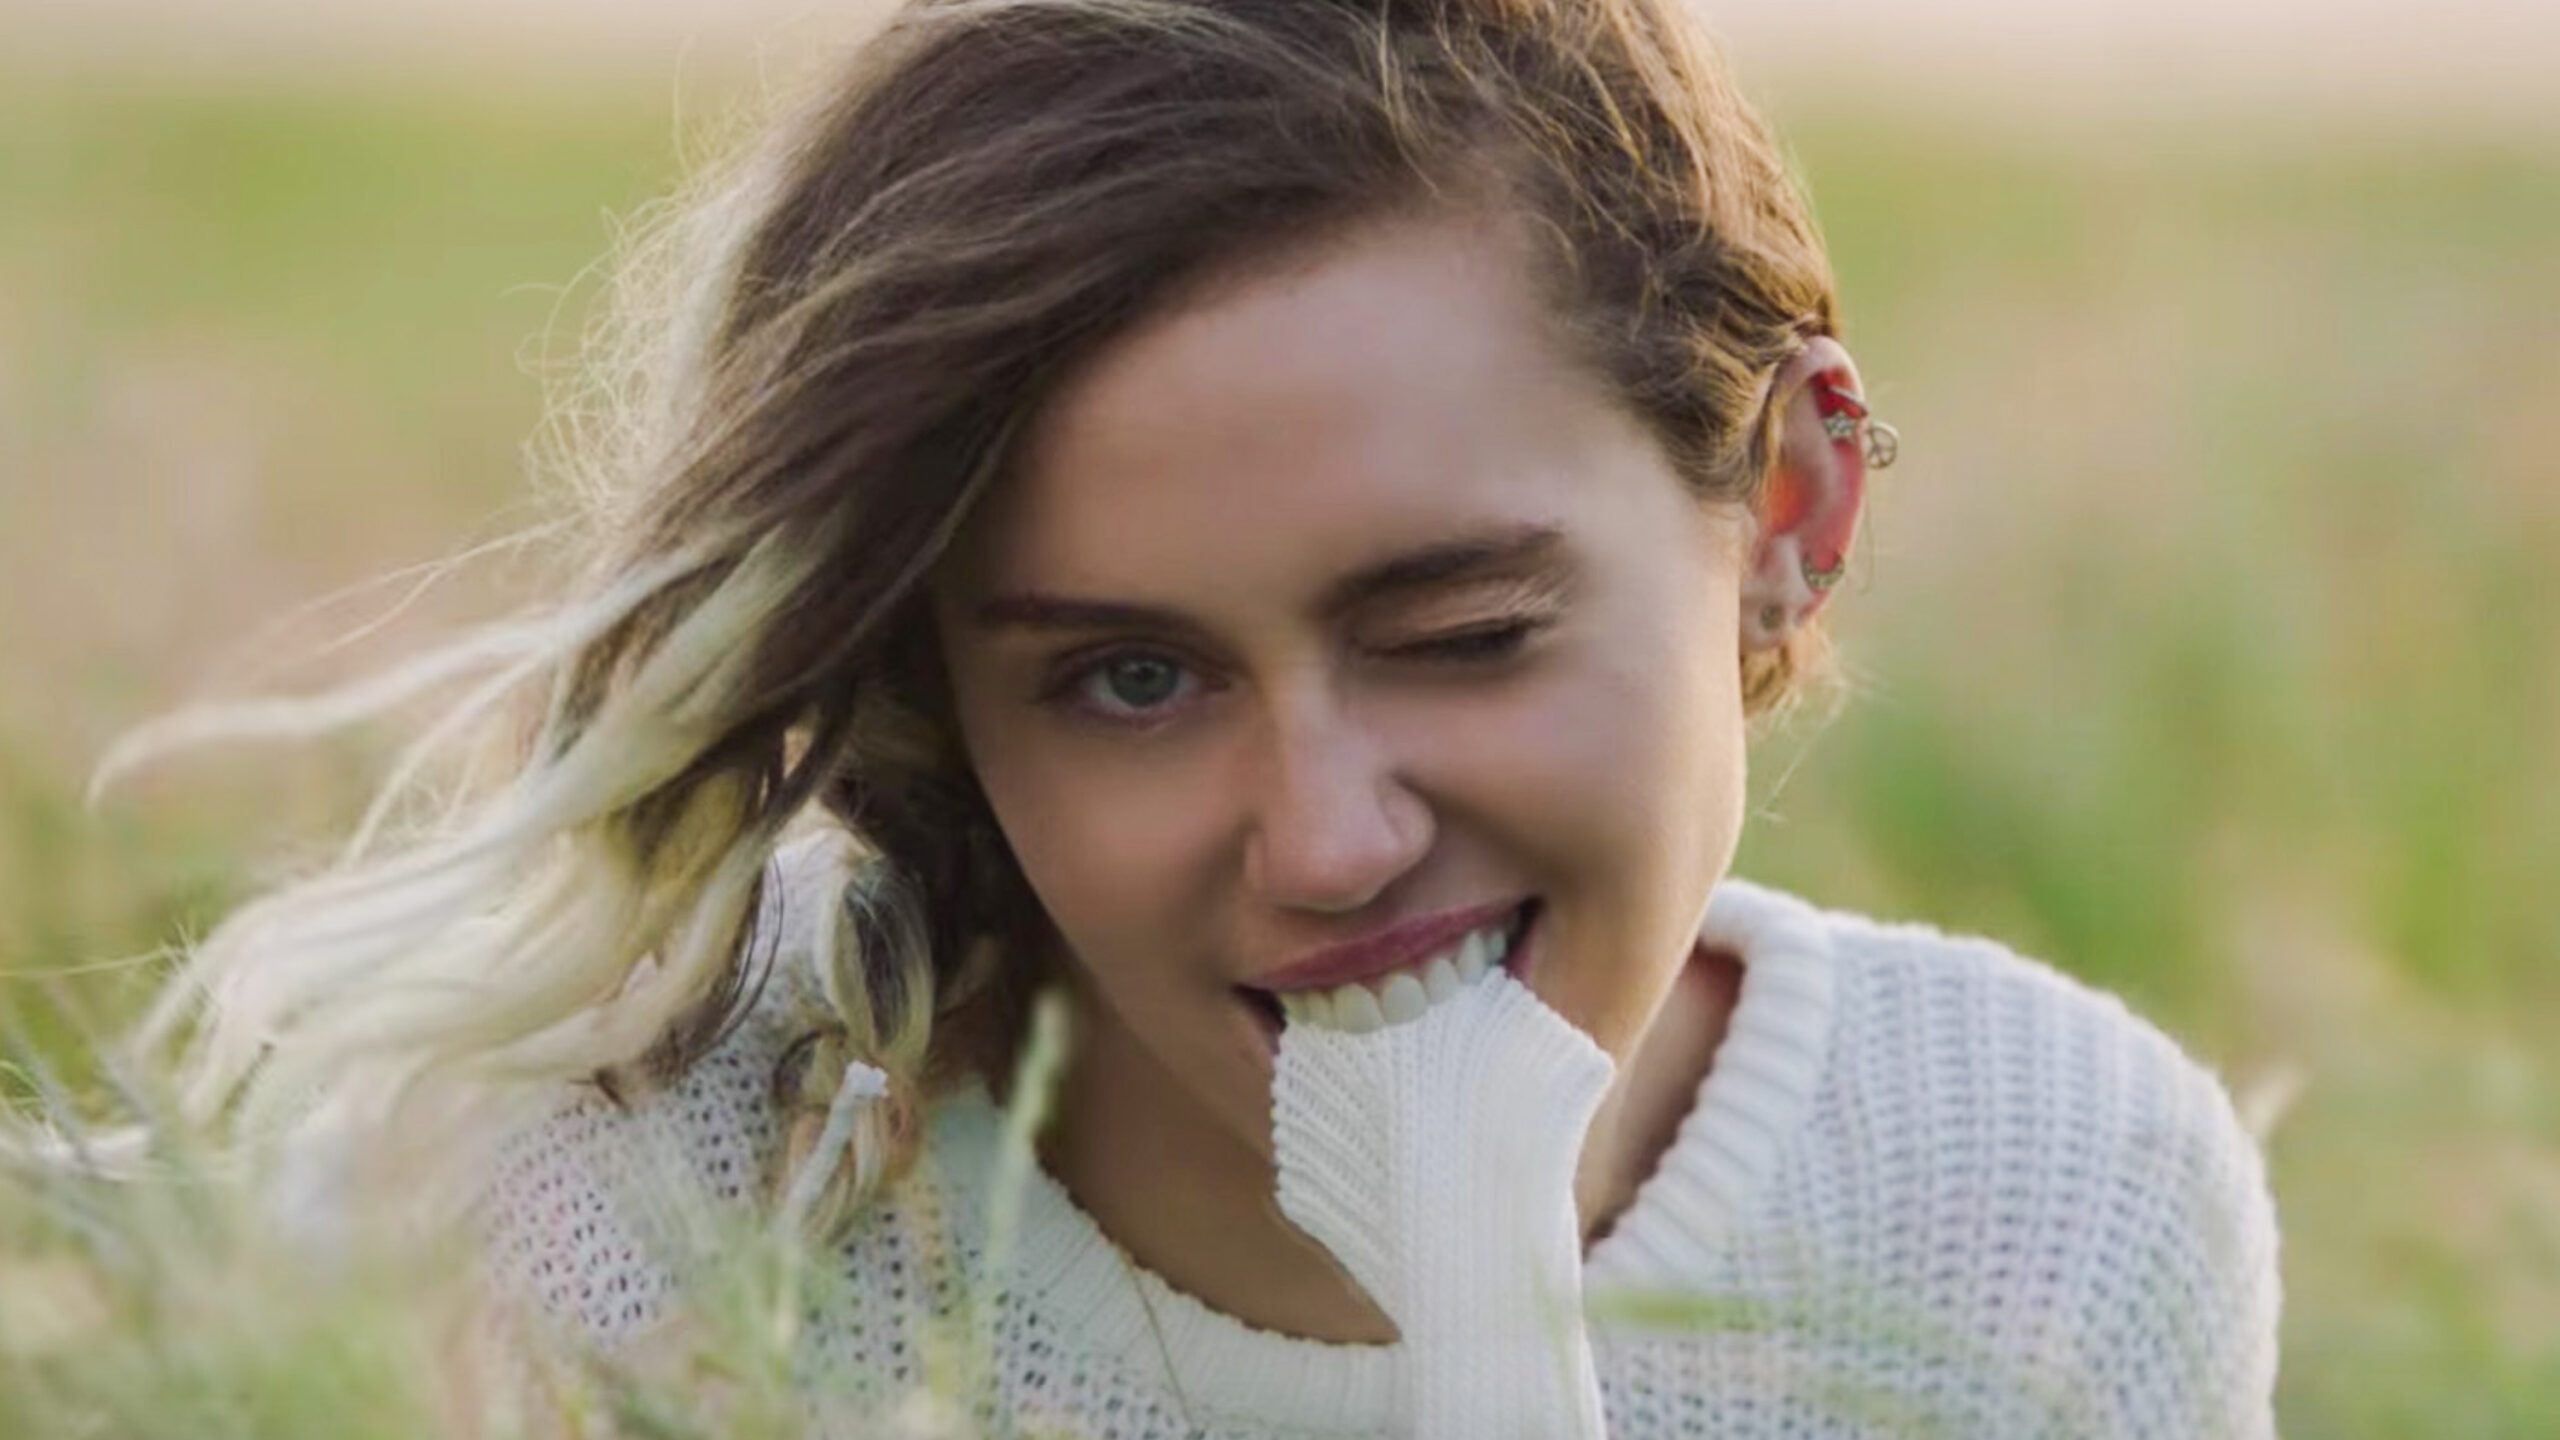 WATCH: Miley Cyrus’ ‘Malibu’ music video